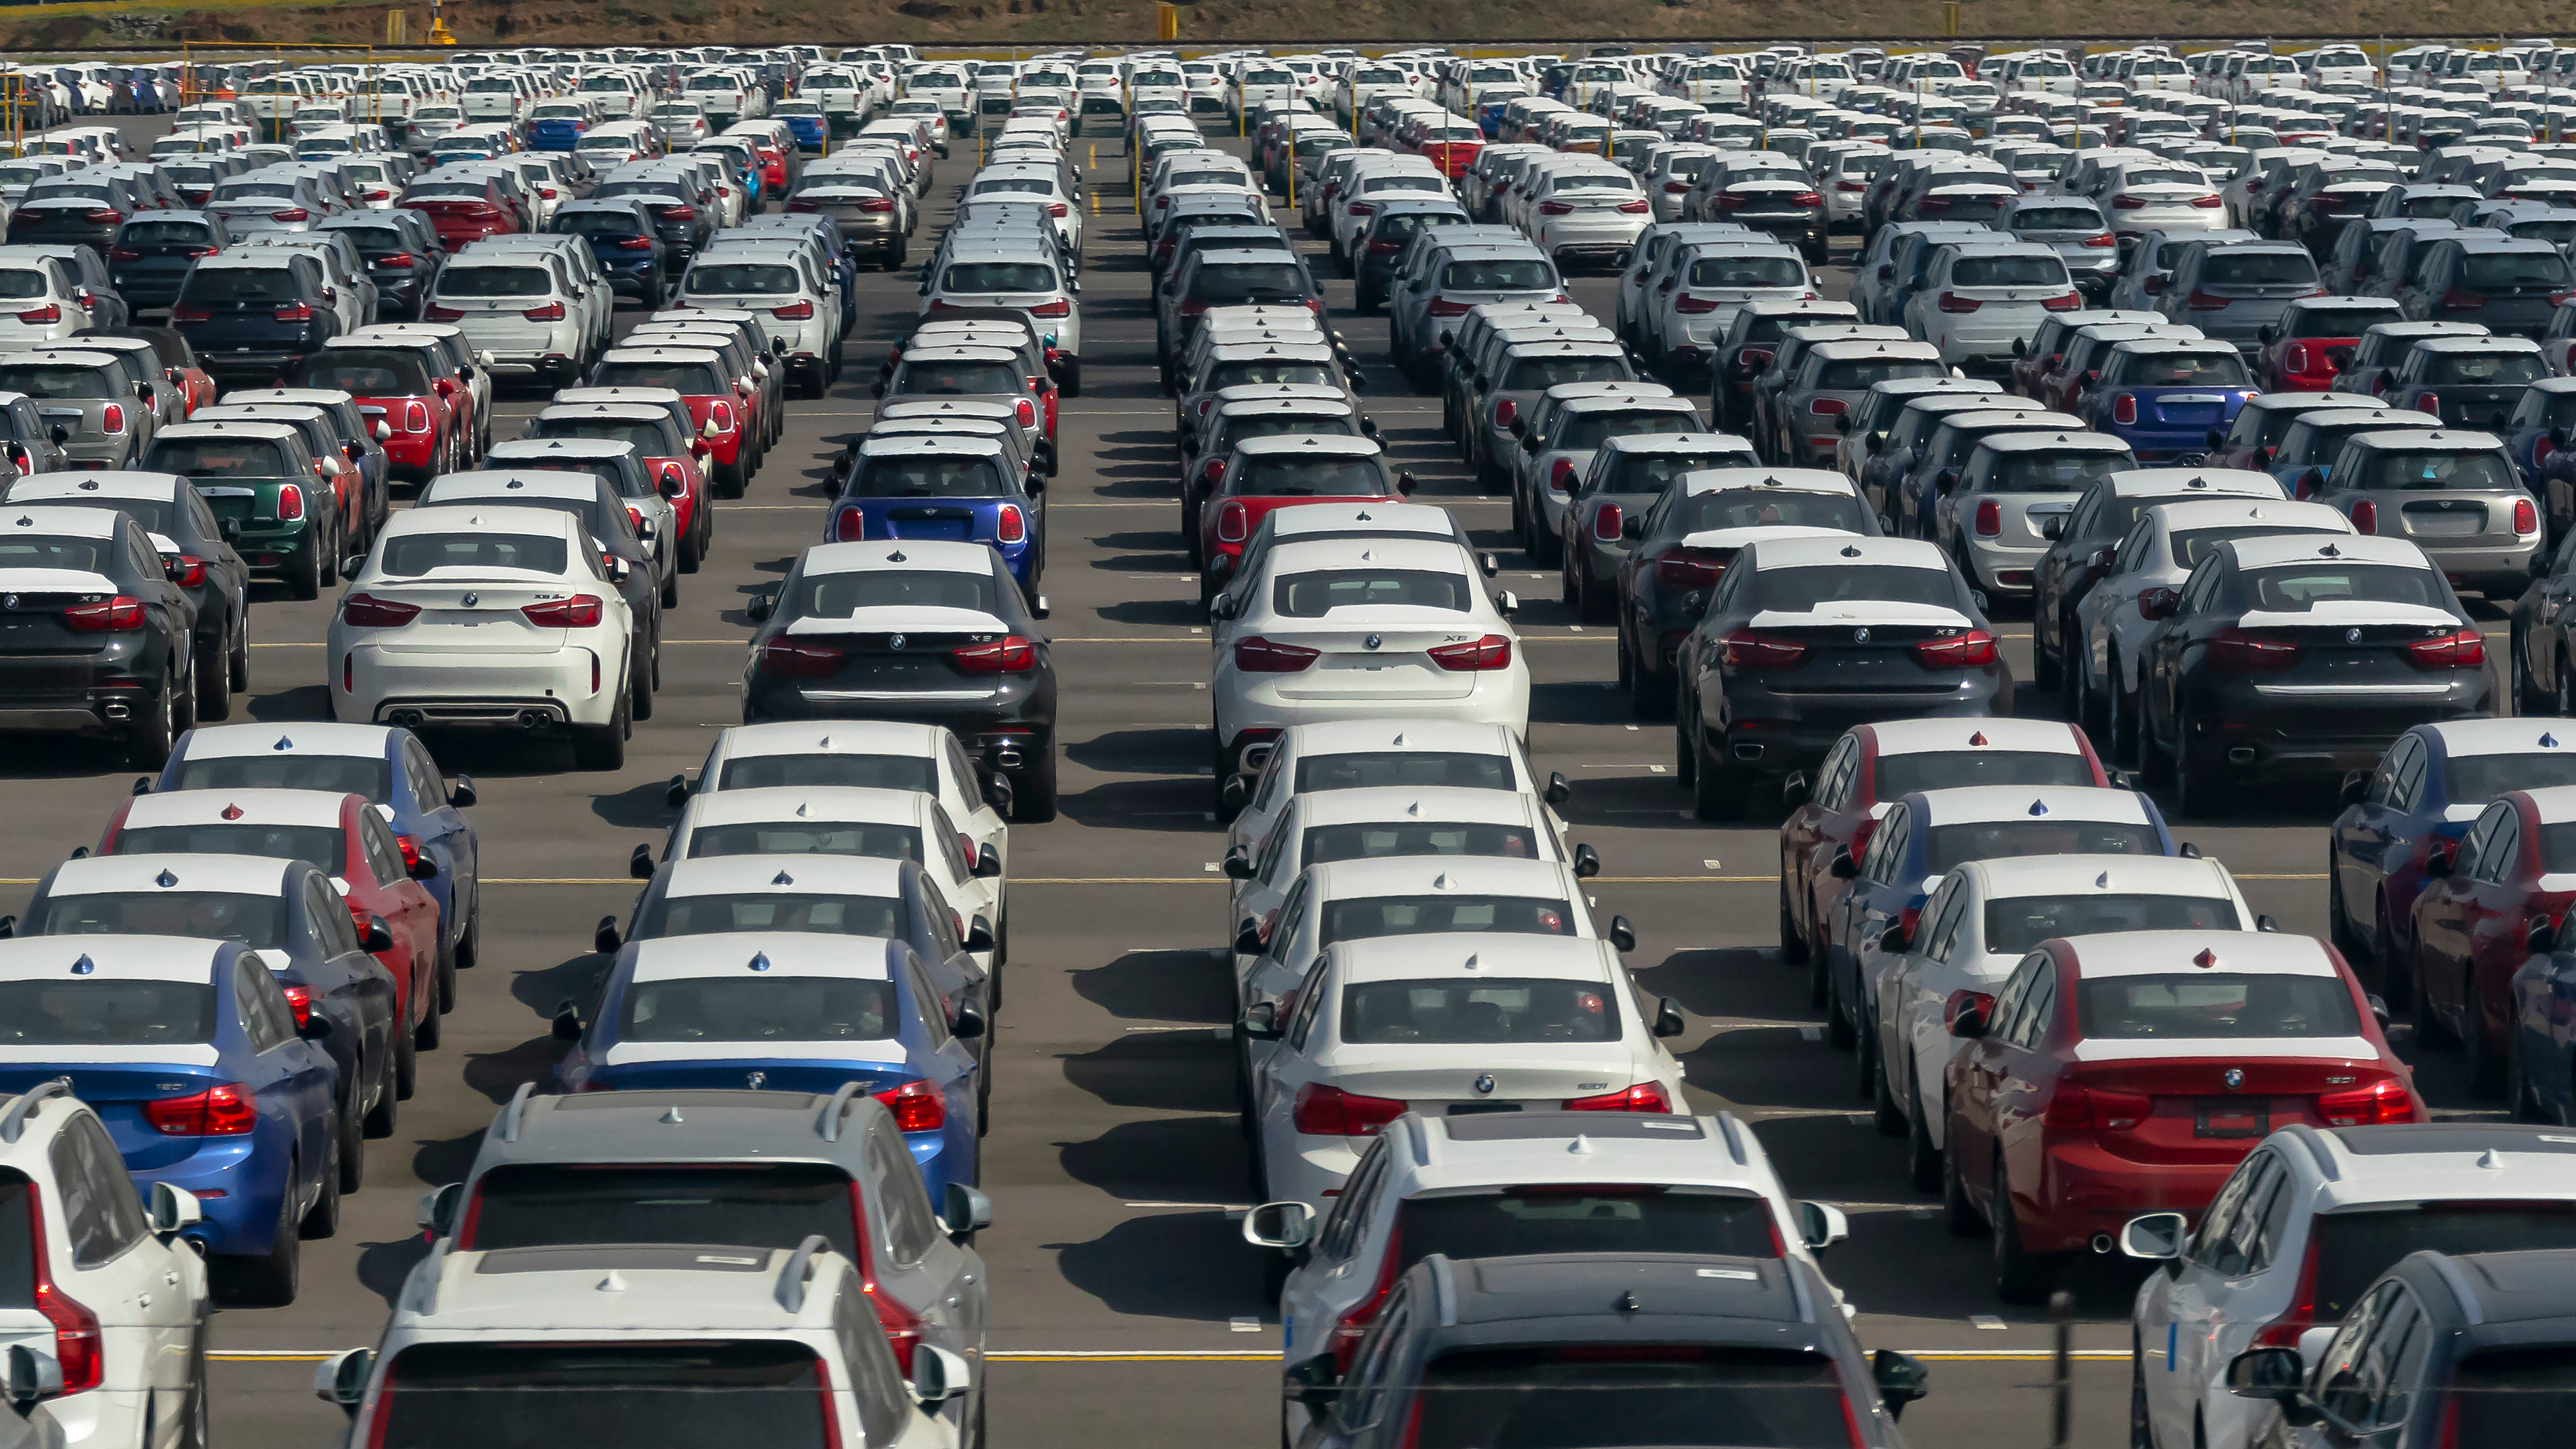 La subasta que realizará la SAT son de vehículos que ingresaron al país, pero los propietarios no pagaron los impuestos correspondientes. (Foto Prensa Libre: Hemeroteca)